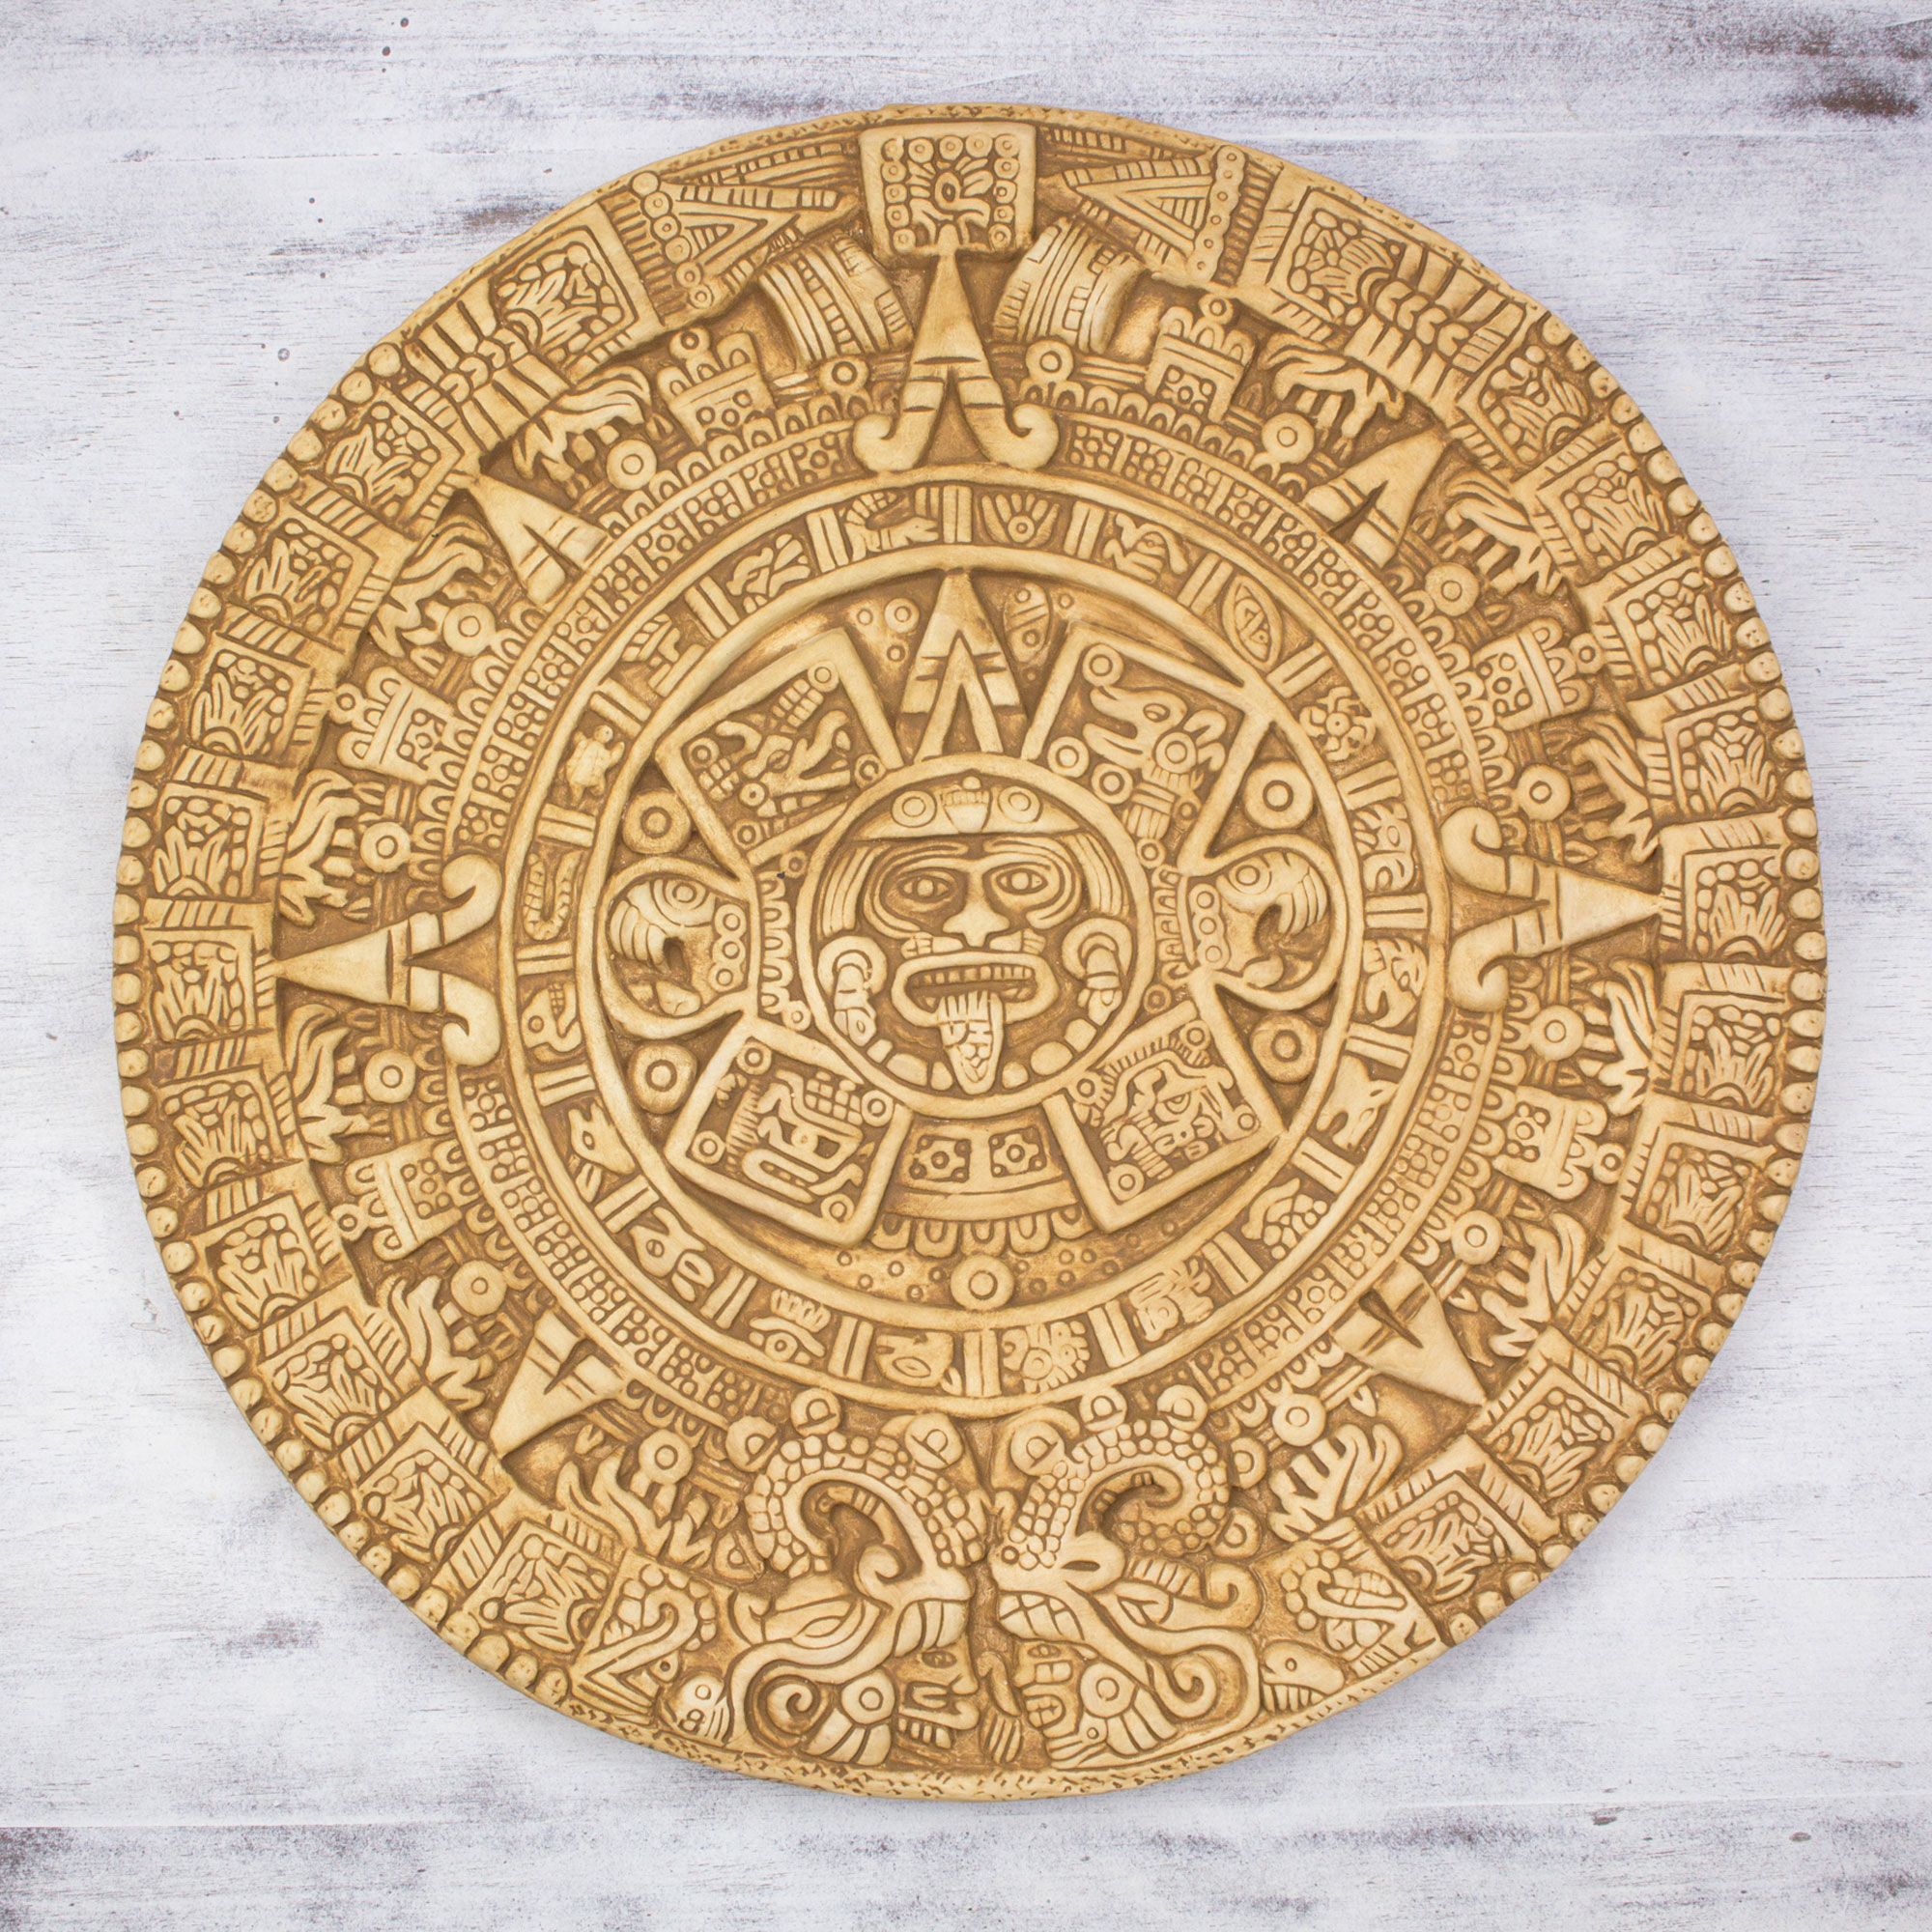 Календарь майя персонажи. Солнечный камень ацтеков. Ацтекский камень солнца. Ацтекский календарь камень солнца. Индейцы Майя календарь Цолькин.